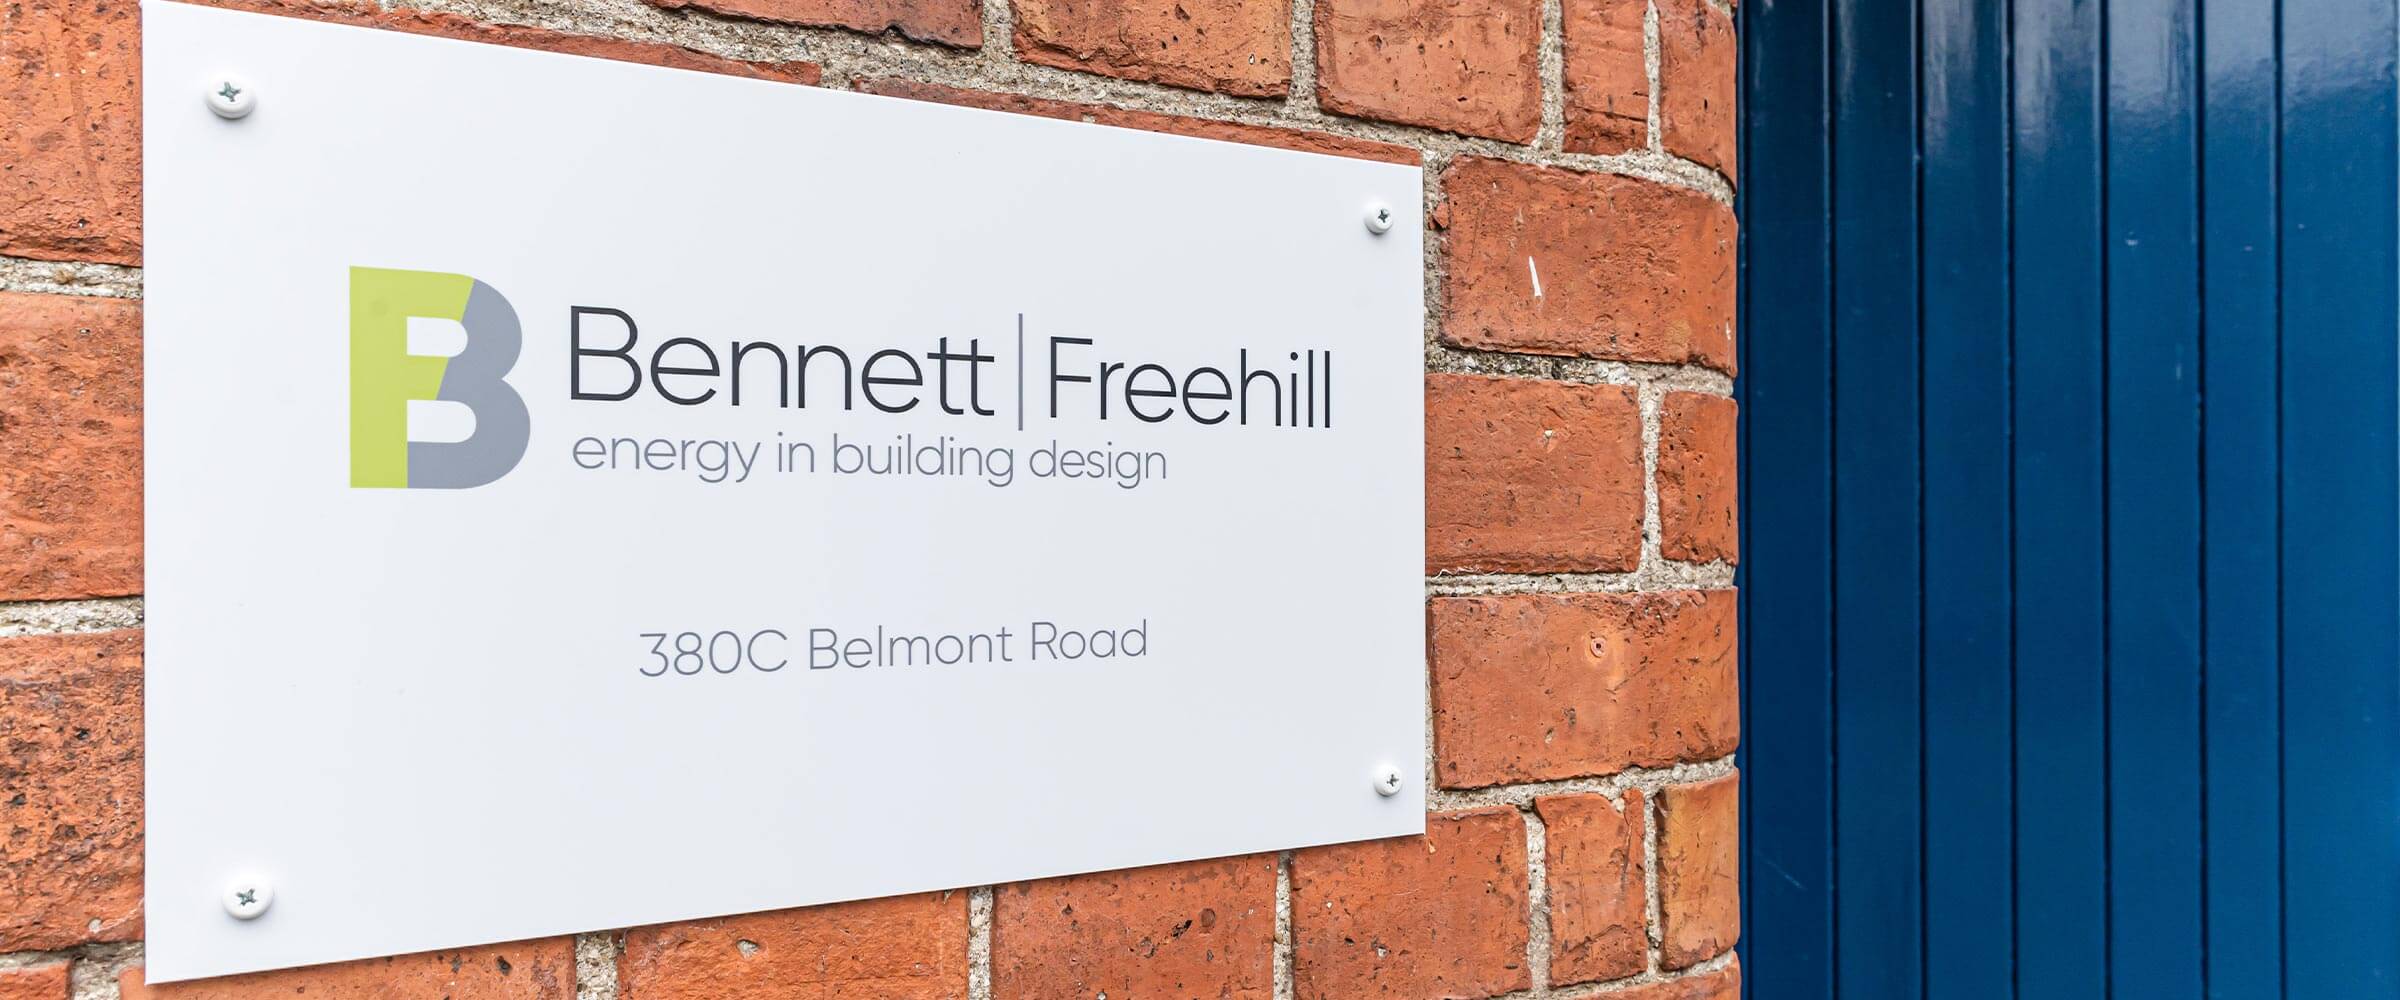 Contact Bennett Freehill